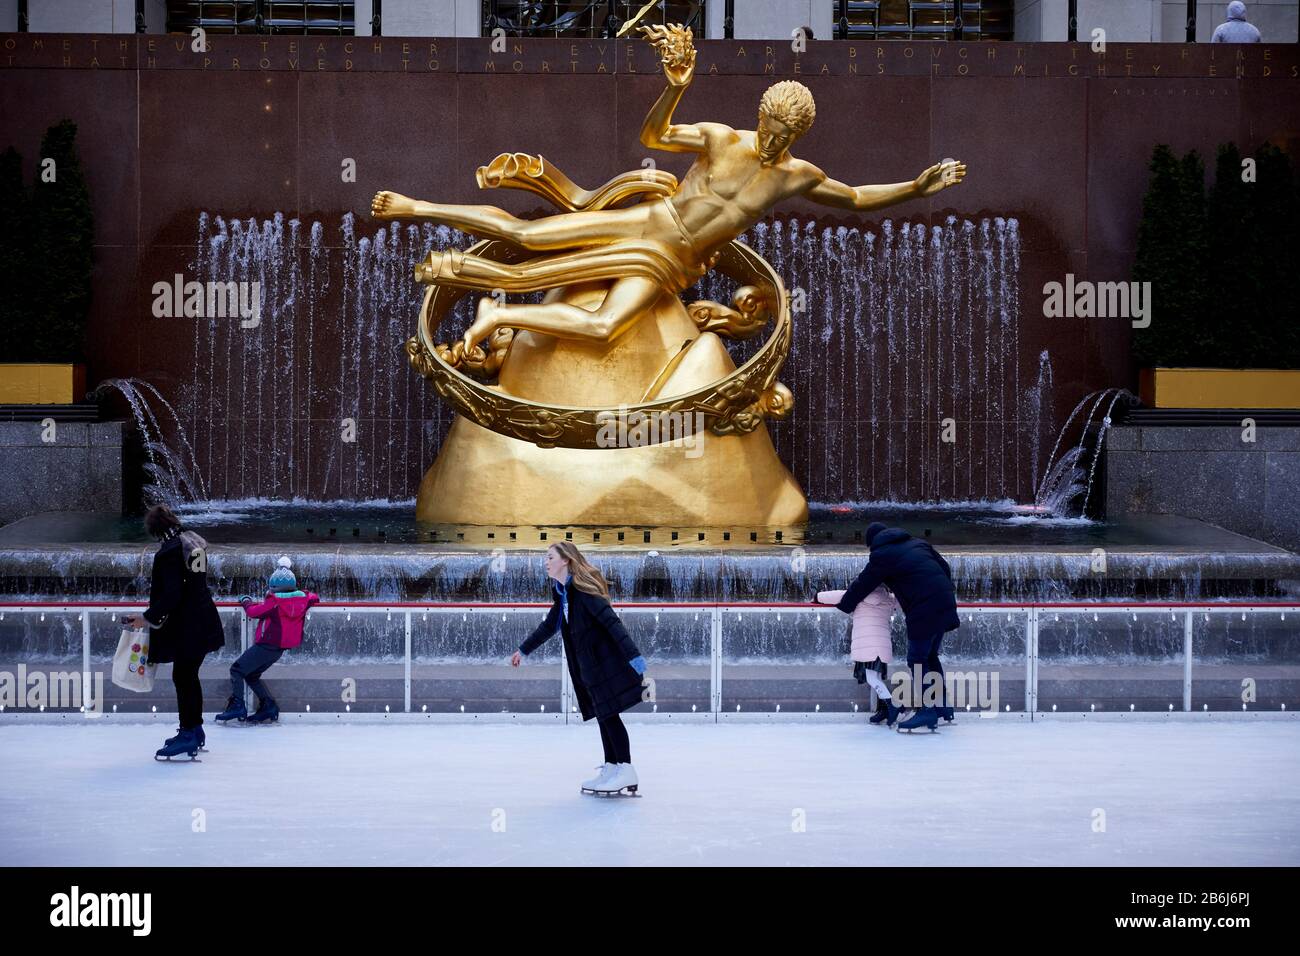 New York ville Manhattan Prométhée 1934 or doré, sculpture en bronze moulé par Paul Manship, située sur la patinoire inférieure de la plaza Rockefeller Center Banque D'Images